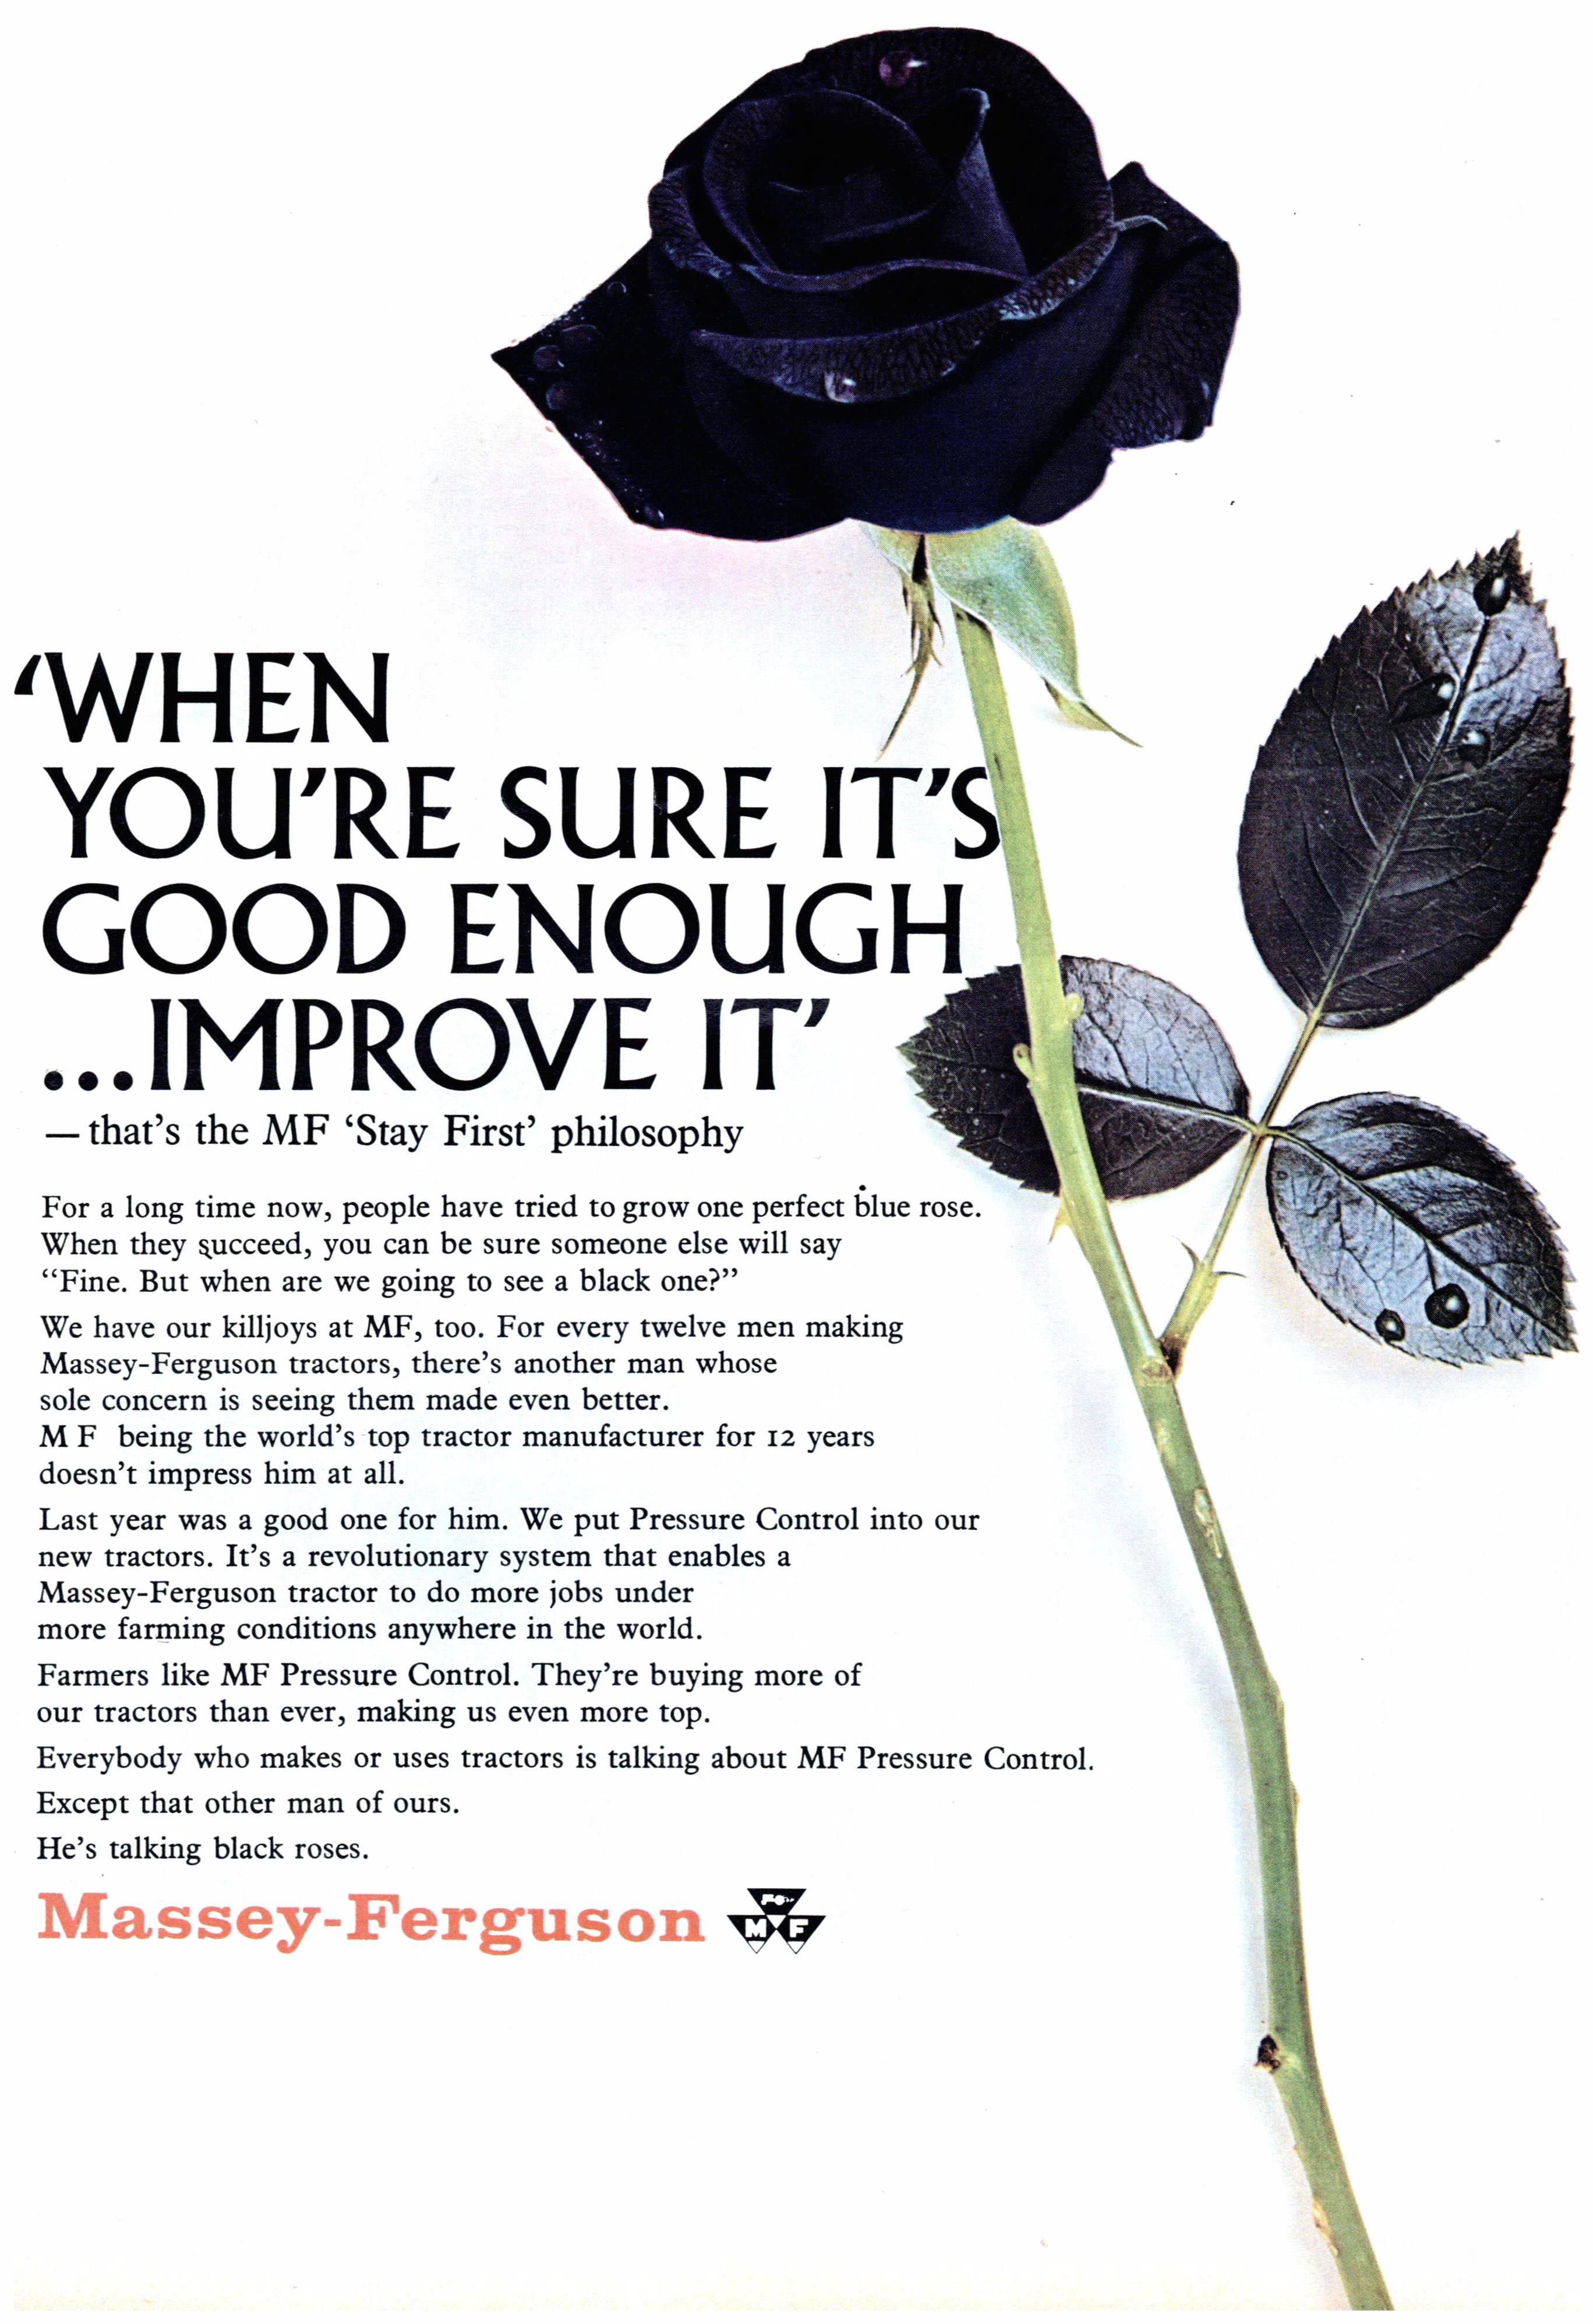 Massey-Ferguson 1966 1.jpg